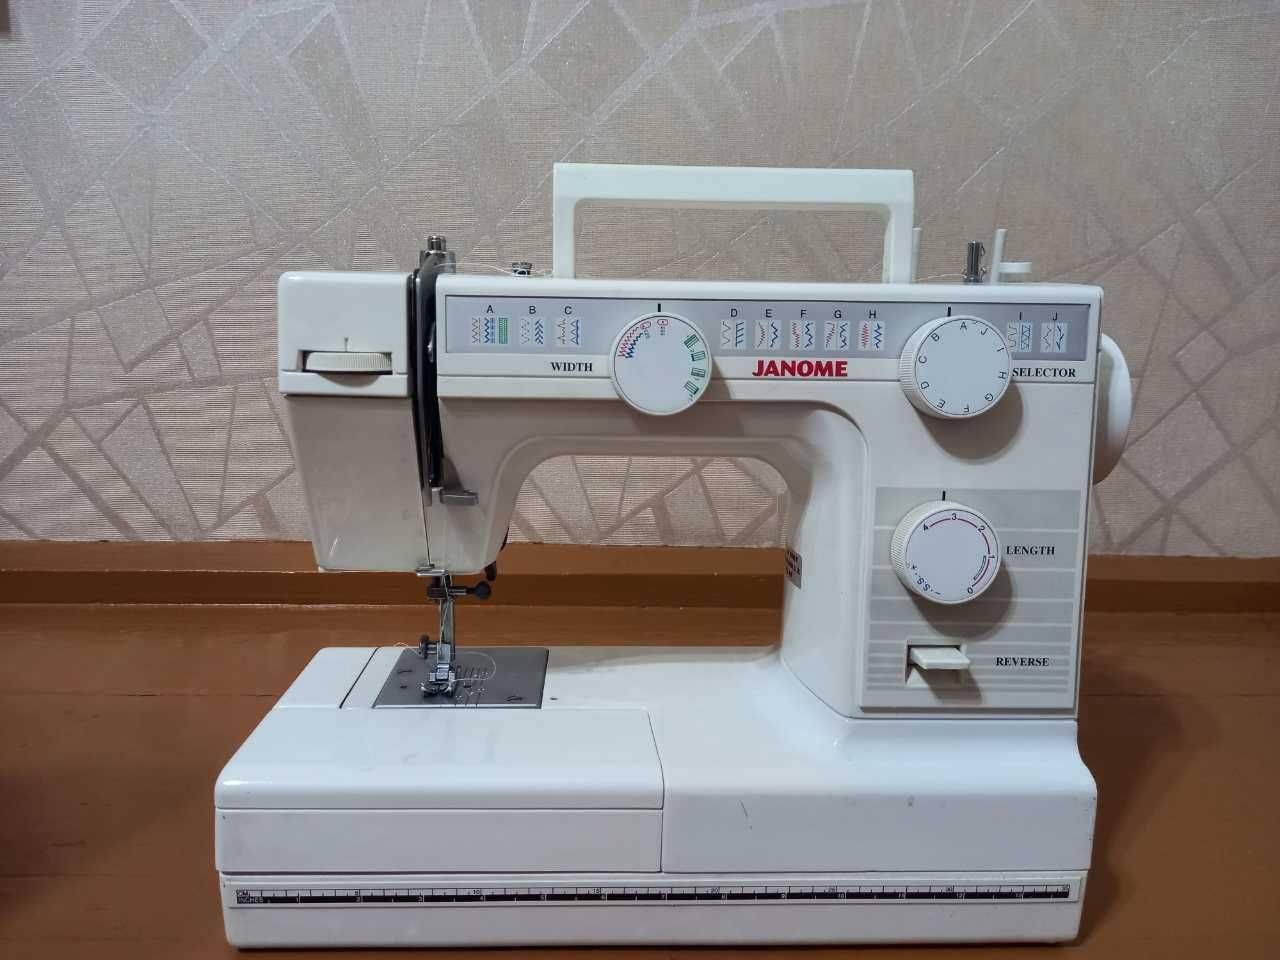 Продается швейная машинка "JANOME" модель 397 silver